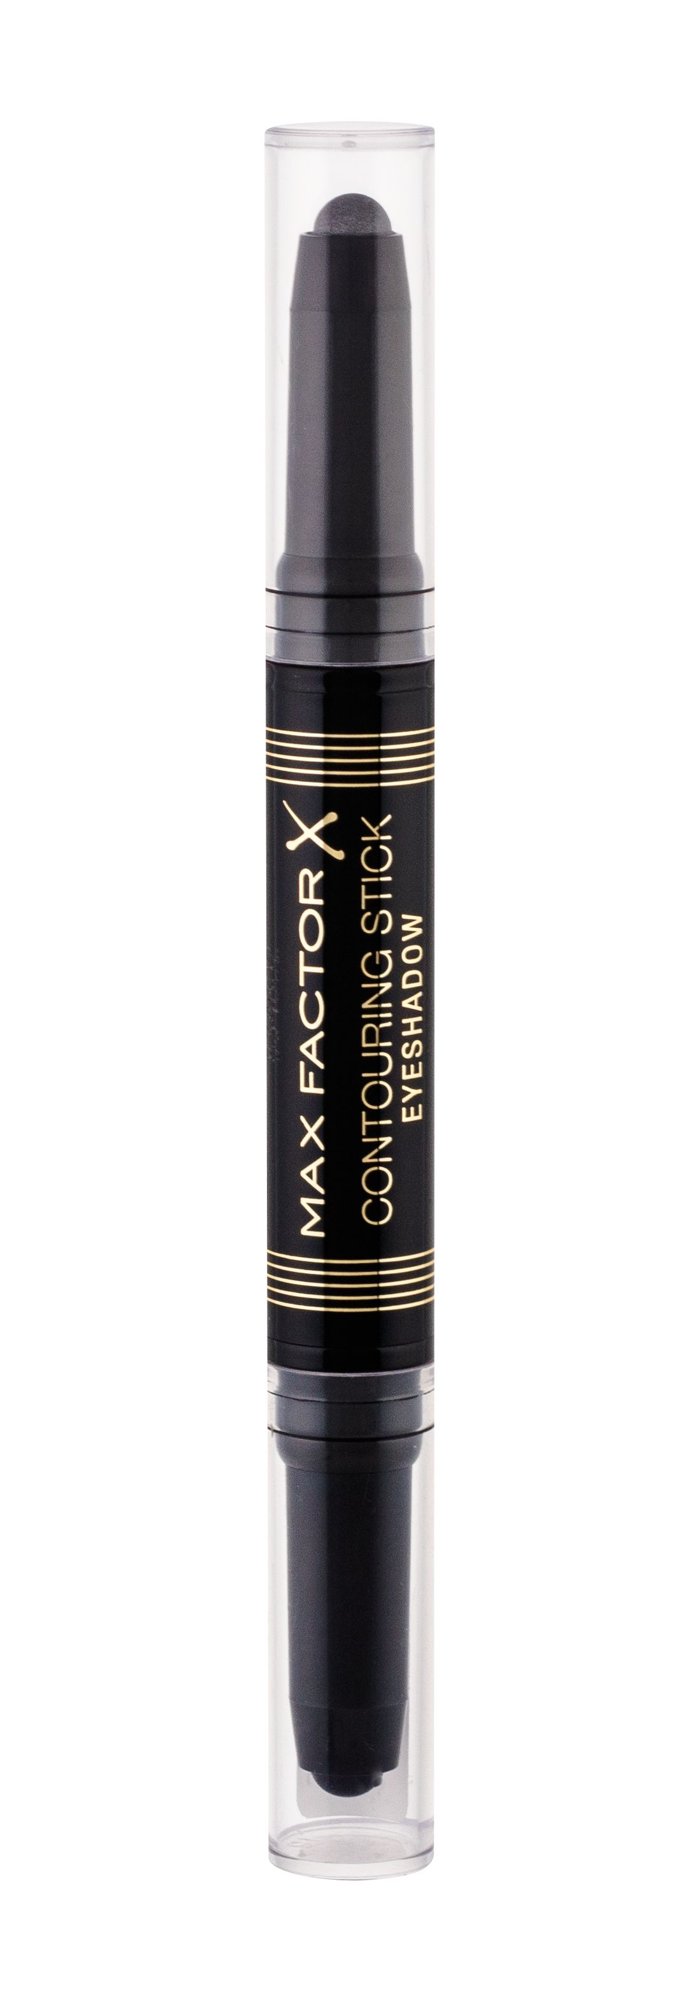 Max Factor Contouring Stick Eyeshadow 5g šešėliai